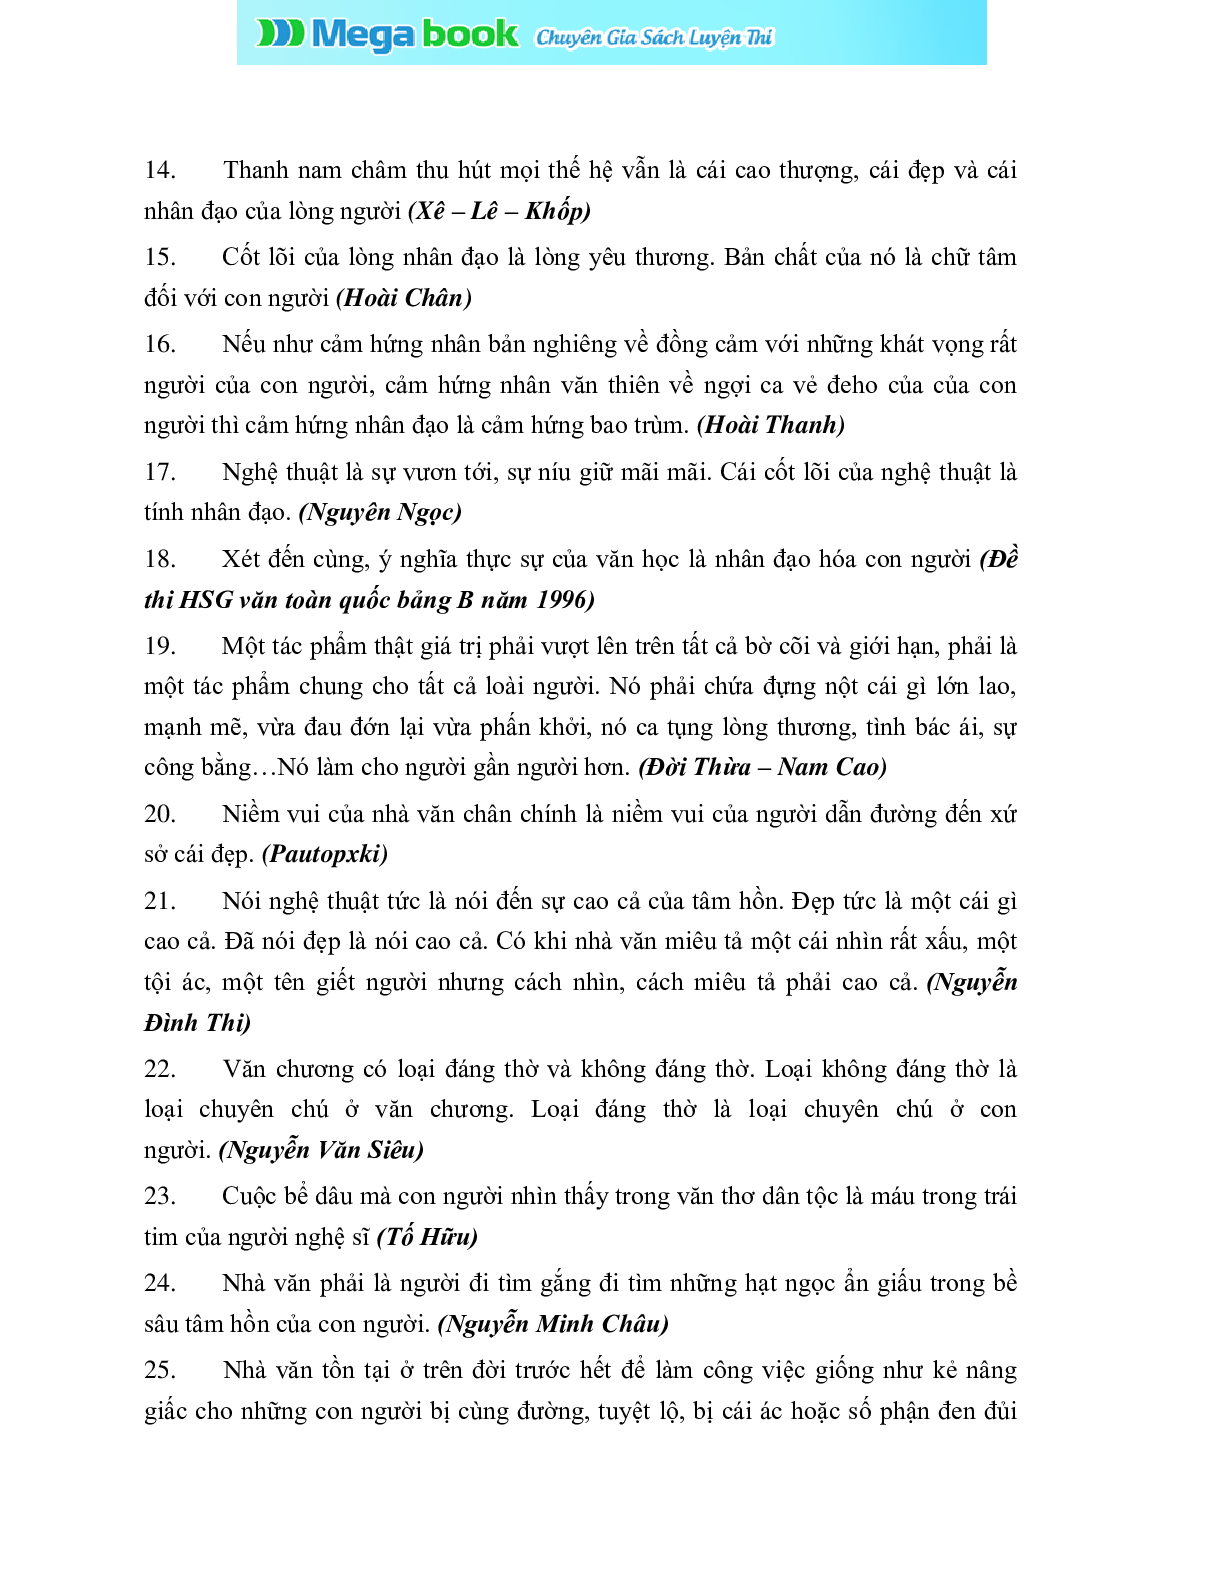 NHẬN ĐỊNH CÁC TÁC PHẨM VĂN HỌC 12 ĐẦY ĐỦ, CHI TIẾT NHẤT (trang 2)